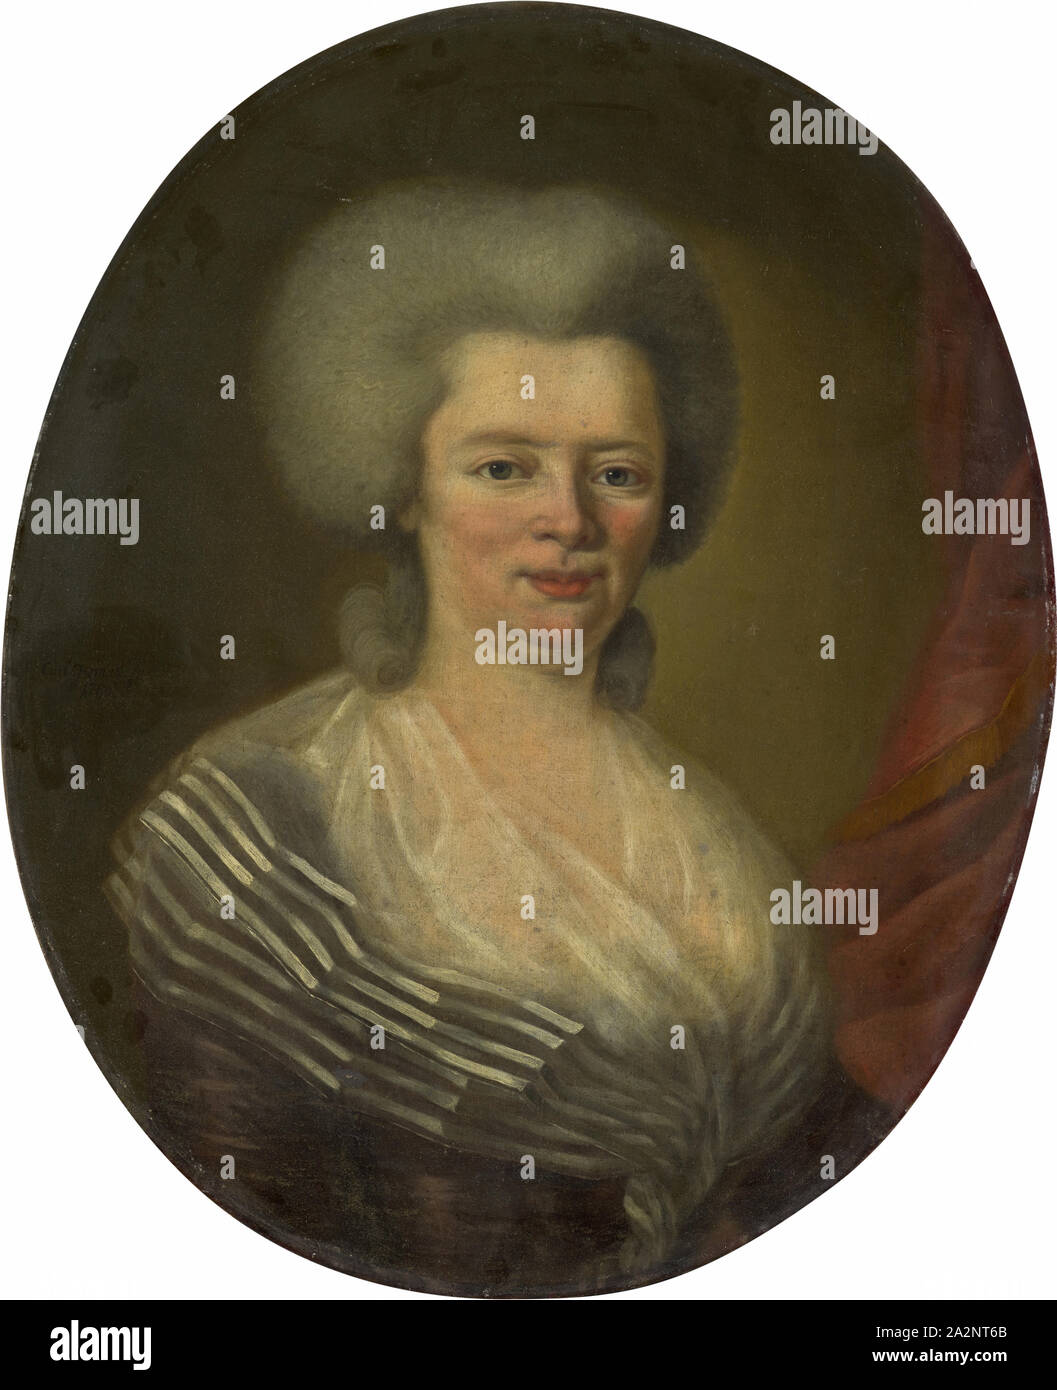 Portrait de Valerie Mieg-Thurneysen, 1786, huile sur toile, 64 x 51,5 cm, signé et daté à gauche au-dessus de l'épaule : Carl allemand [n] fc., 1786, Carl Germann, Lichtensteig/St. Gall 1755-1830 Soleure Banque D'Images